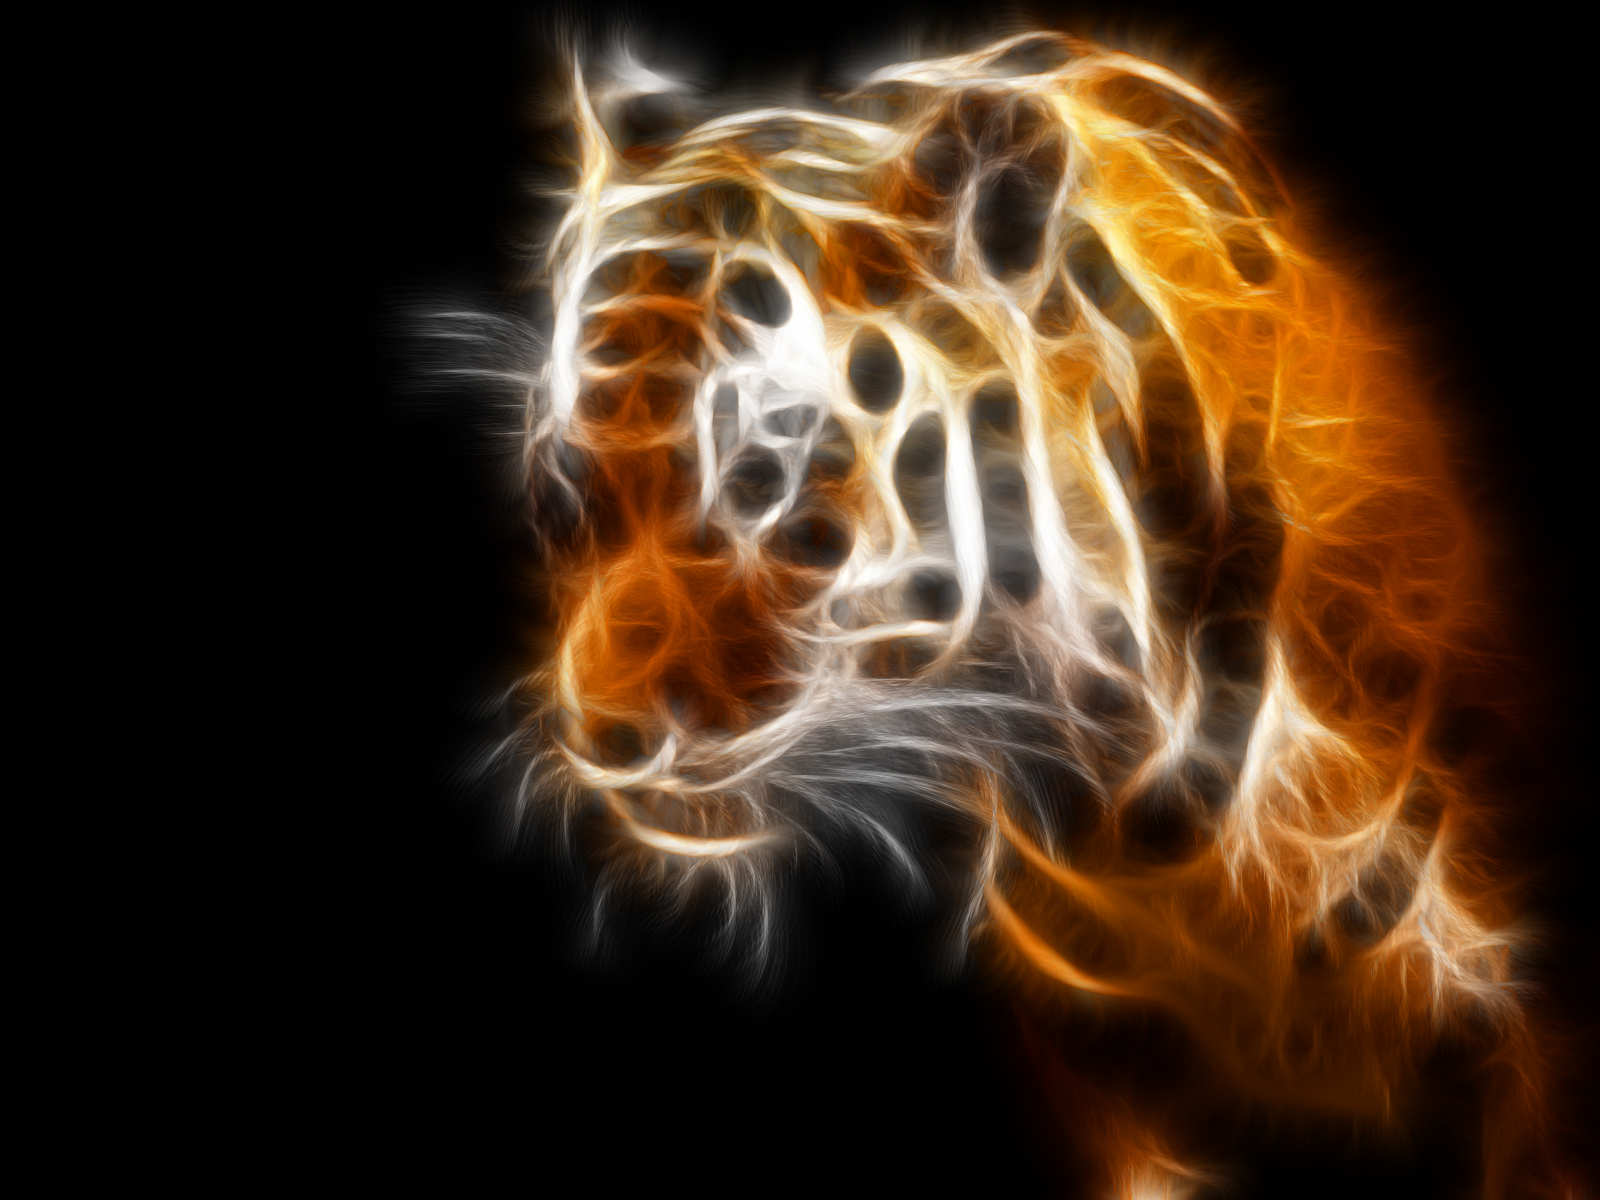 Fractal Tiger - HD Wallpaper 